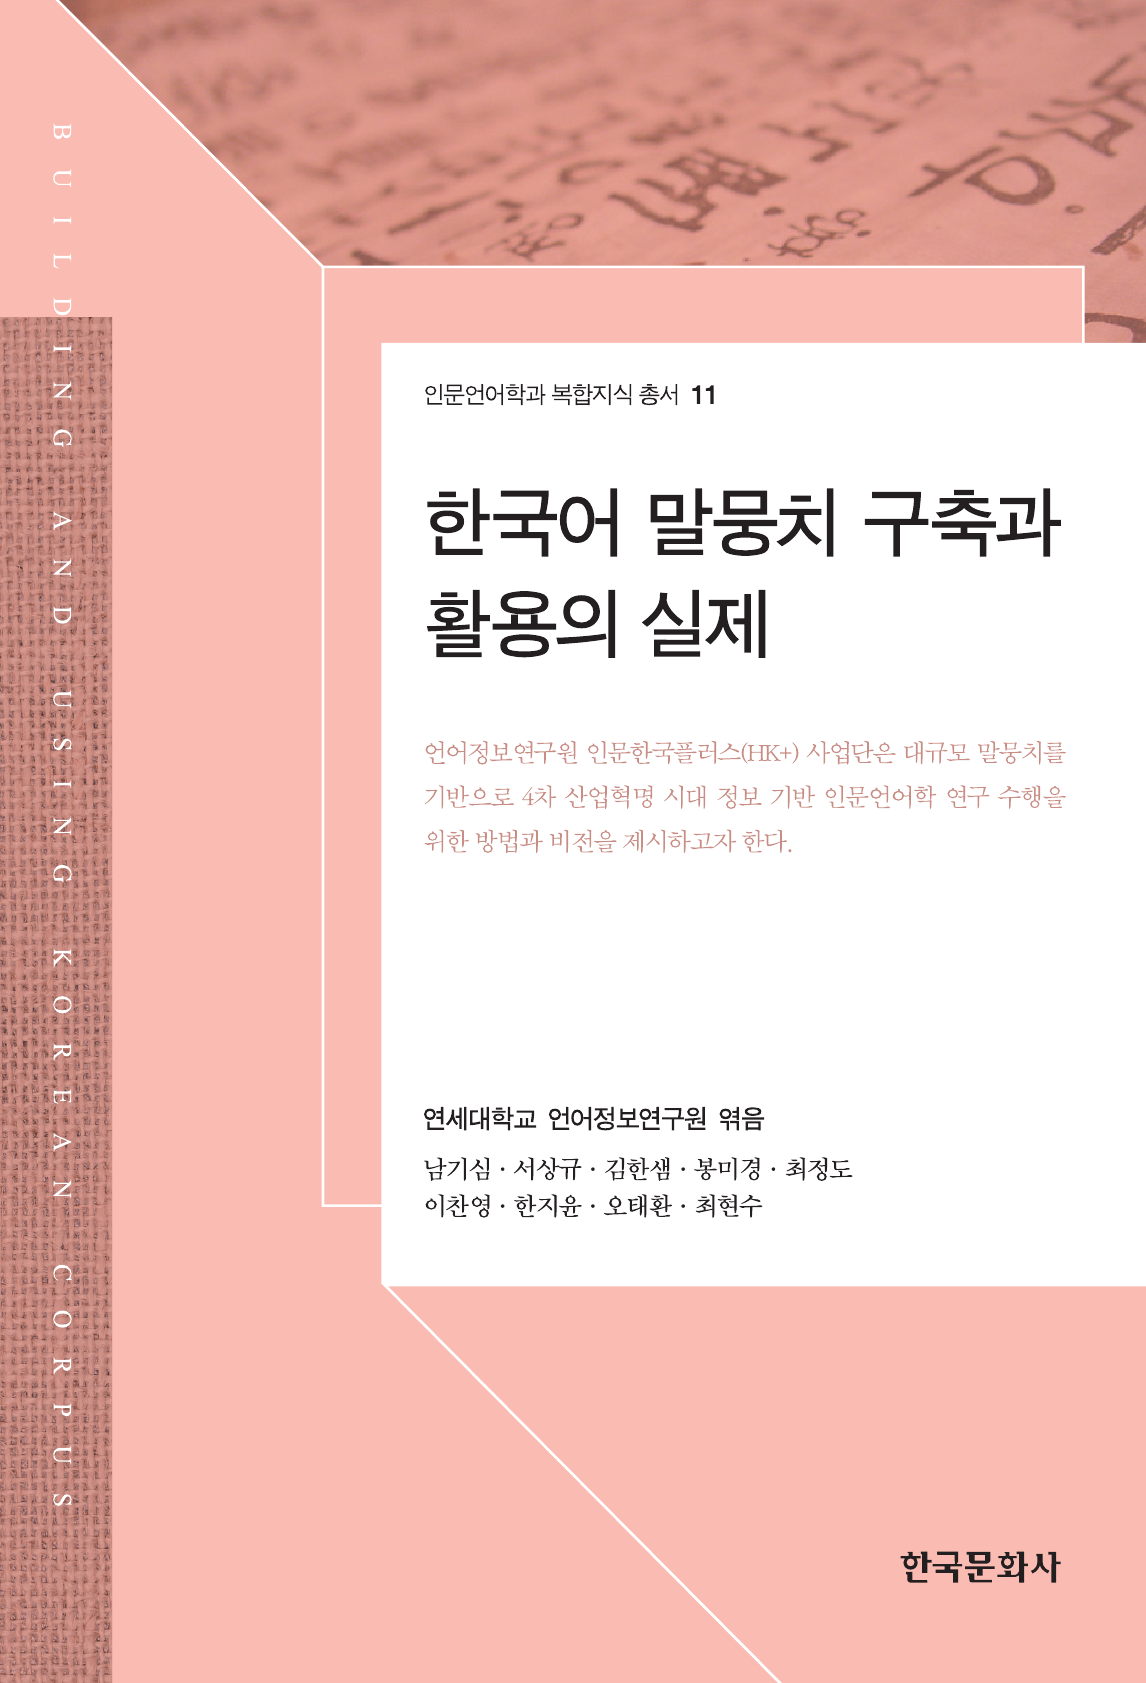 한국어 말뭉치 구축과 활용의 실제